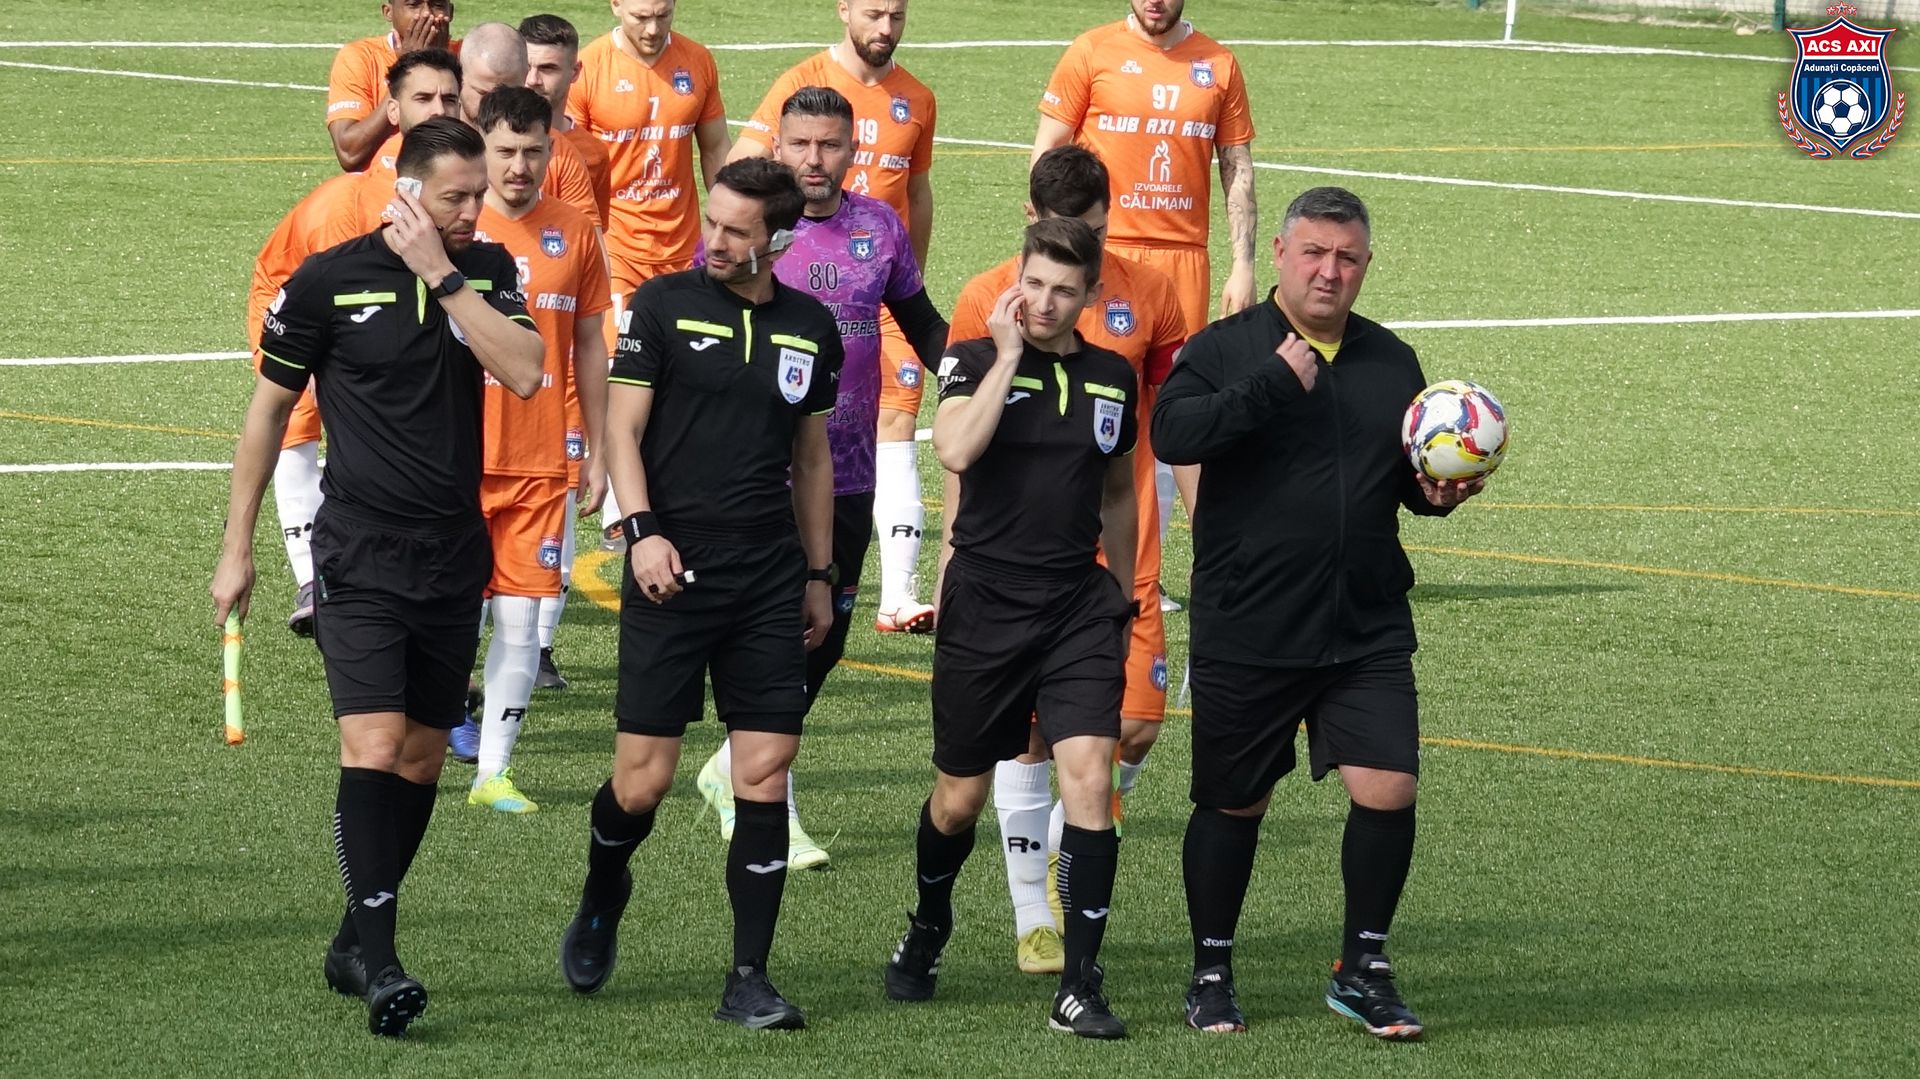 De la FCSB la Malu Spart și Adunații Copăceni! Ce sumă a primit Sebastian Colțescu după ce a arbitrat în Liga a 4-a